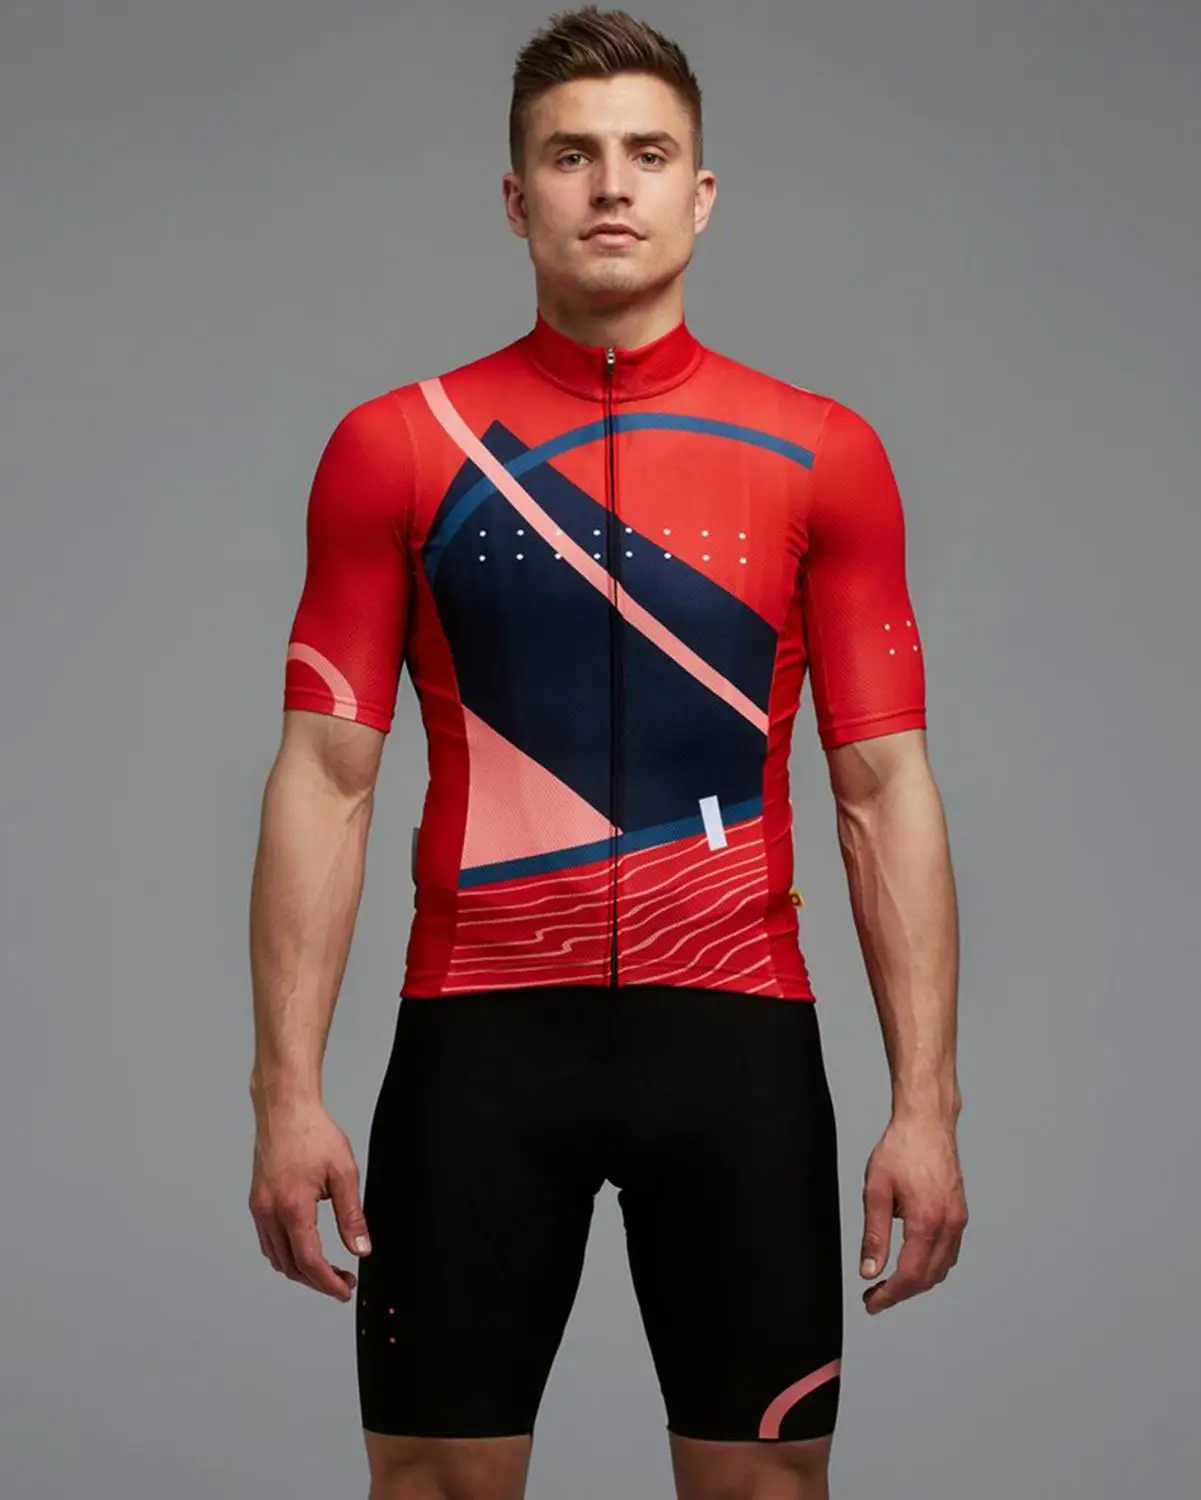 PEDLA комплект одежды для велоспорта с коротким рукавом, Джерси, комплект для велосипедного цикла, одежда для шоссейного велосипеда, Ropa Ciclismo Hombre, Mtb, одежда, костюм - Цвет: suits 12